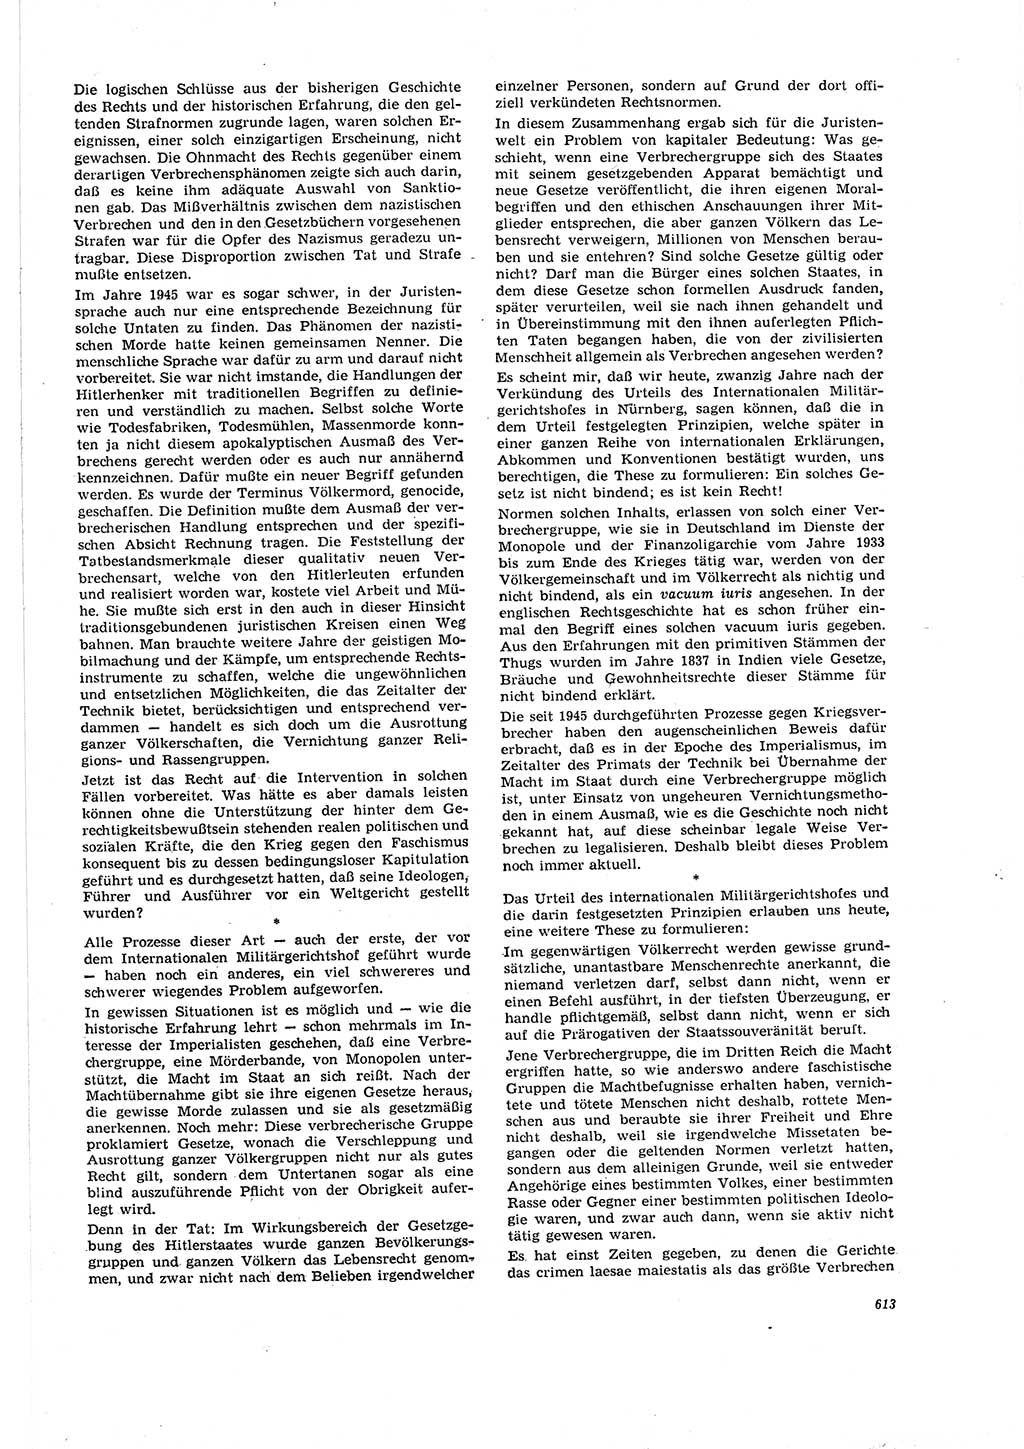 Neue Justiz (NJ), Zeitschrift für Recht und Rechtswissenschaft [Deutsche Demokratische Republik (DDR)], 20. Jahrgang 1966, Seite 613 (NJ DDR 1966, S. 613)